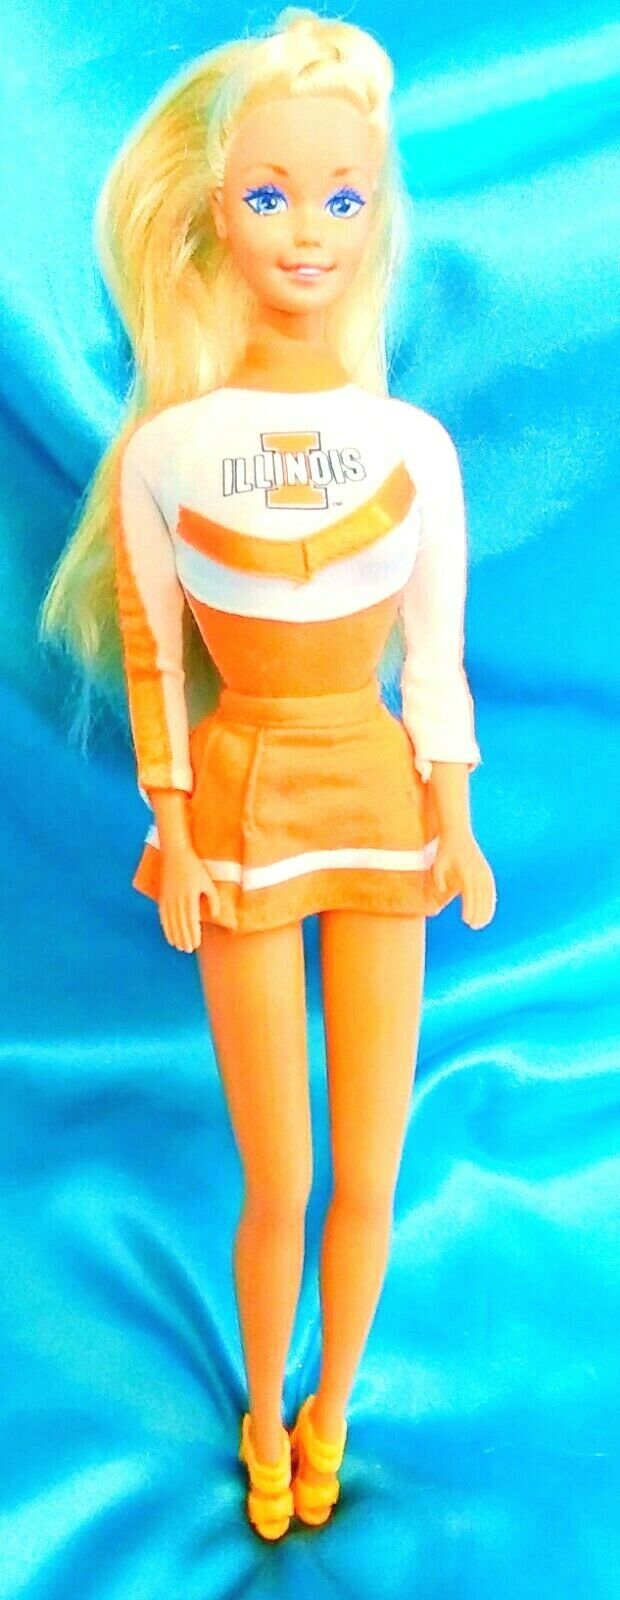 University Of Illinois - Cheerleader Barbie Loose Doll 1993